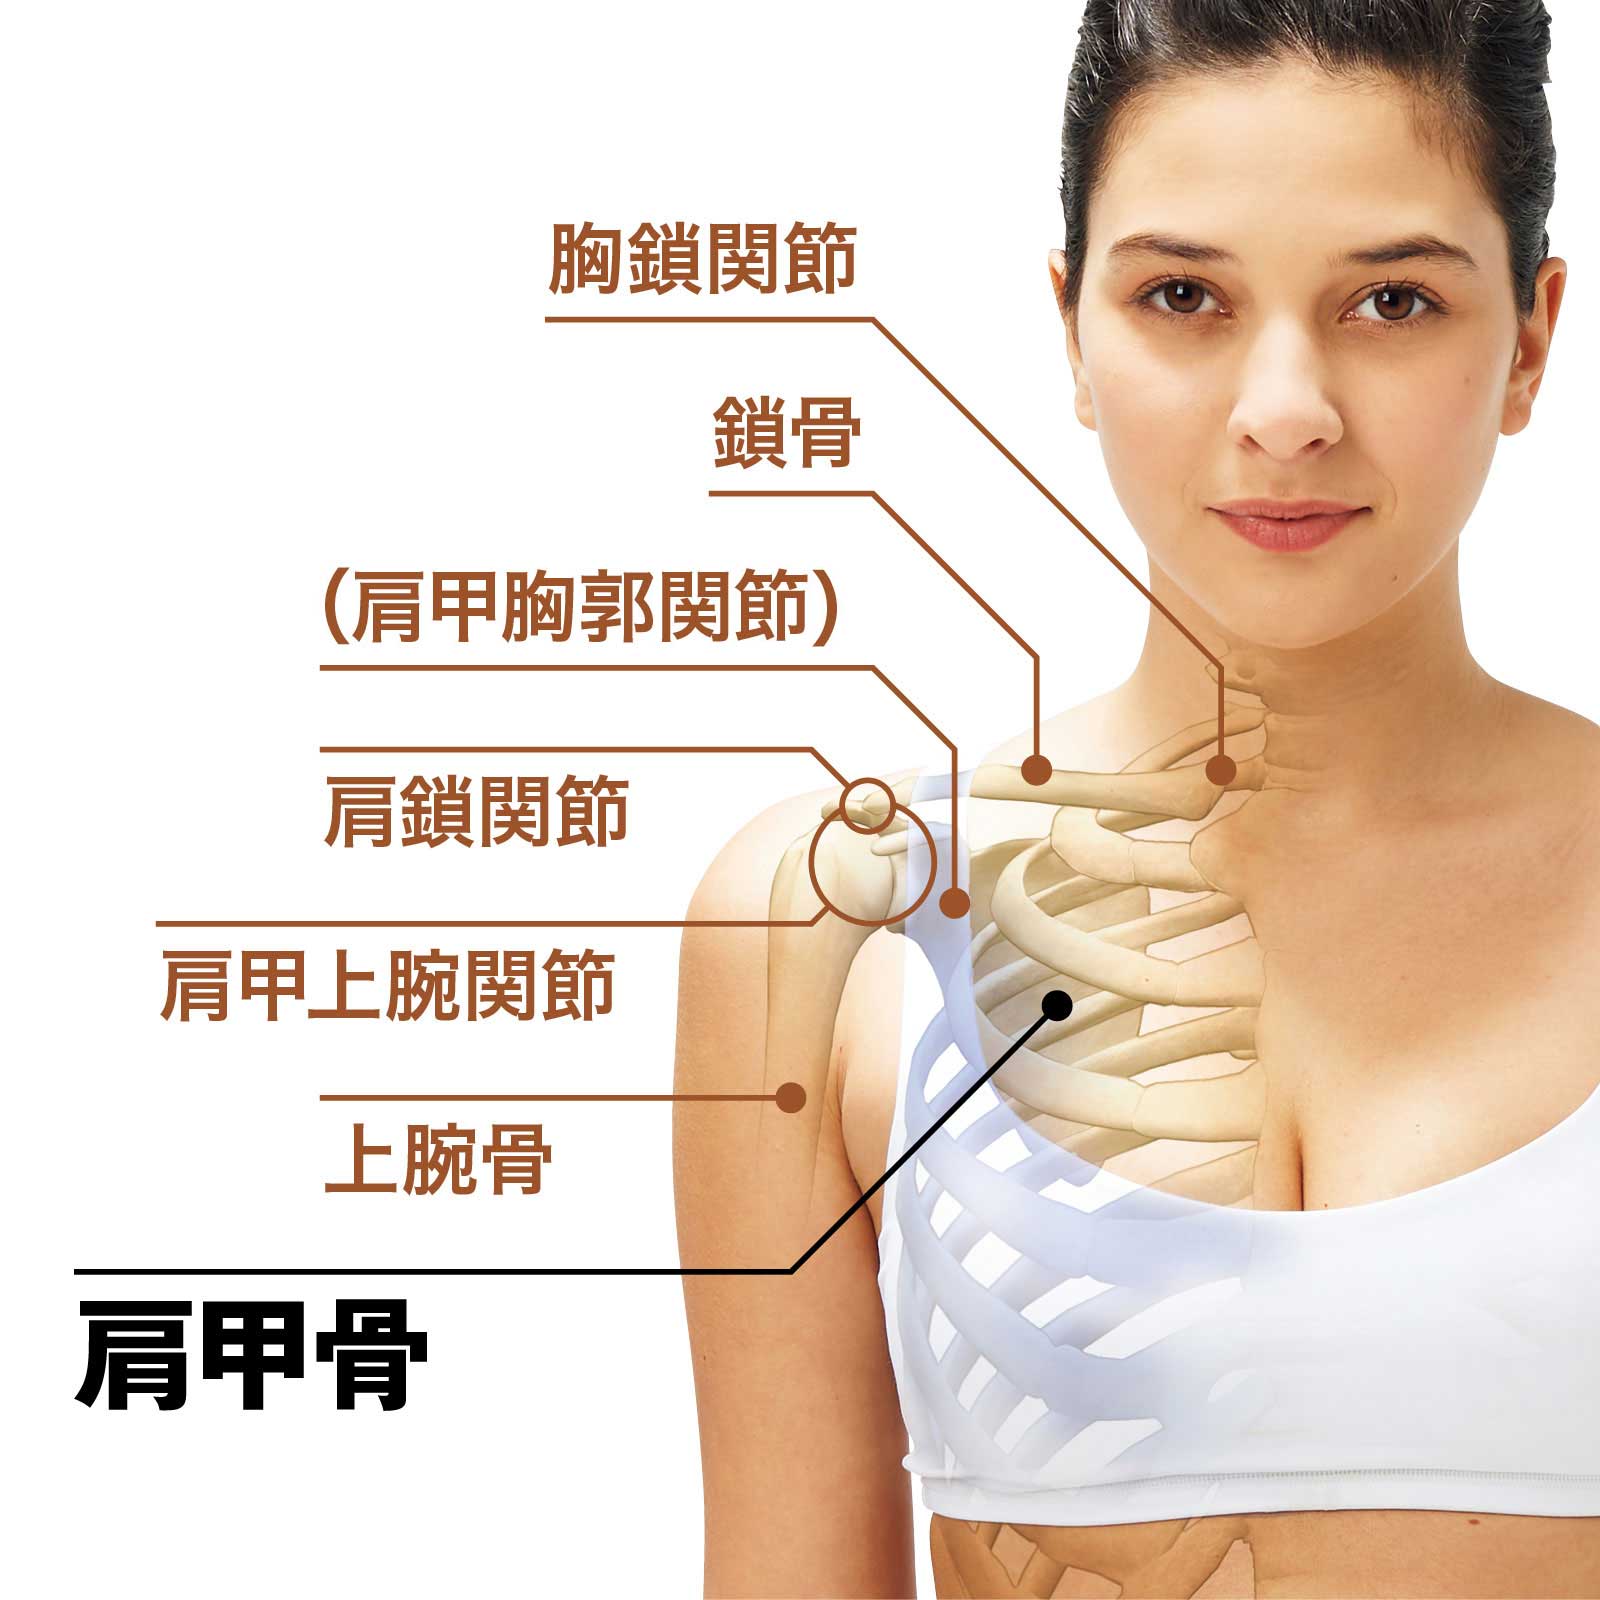 肩甲骨の動きと役割 人体図